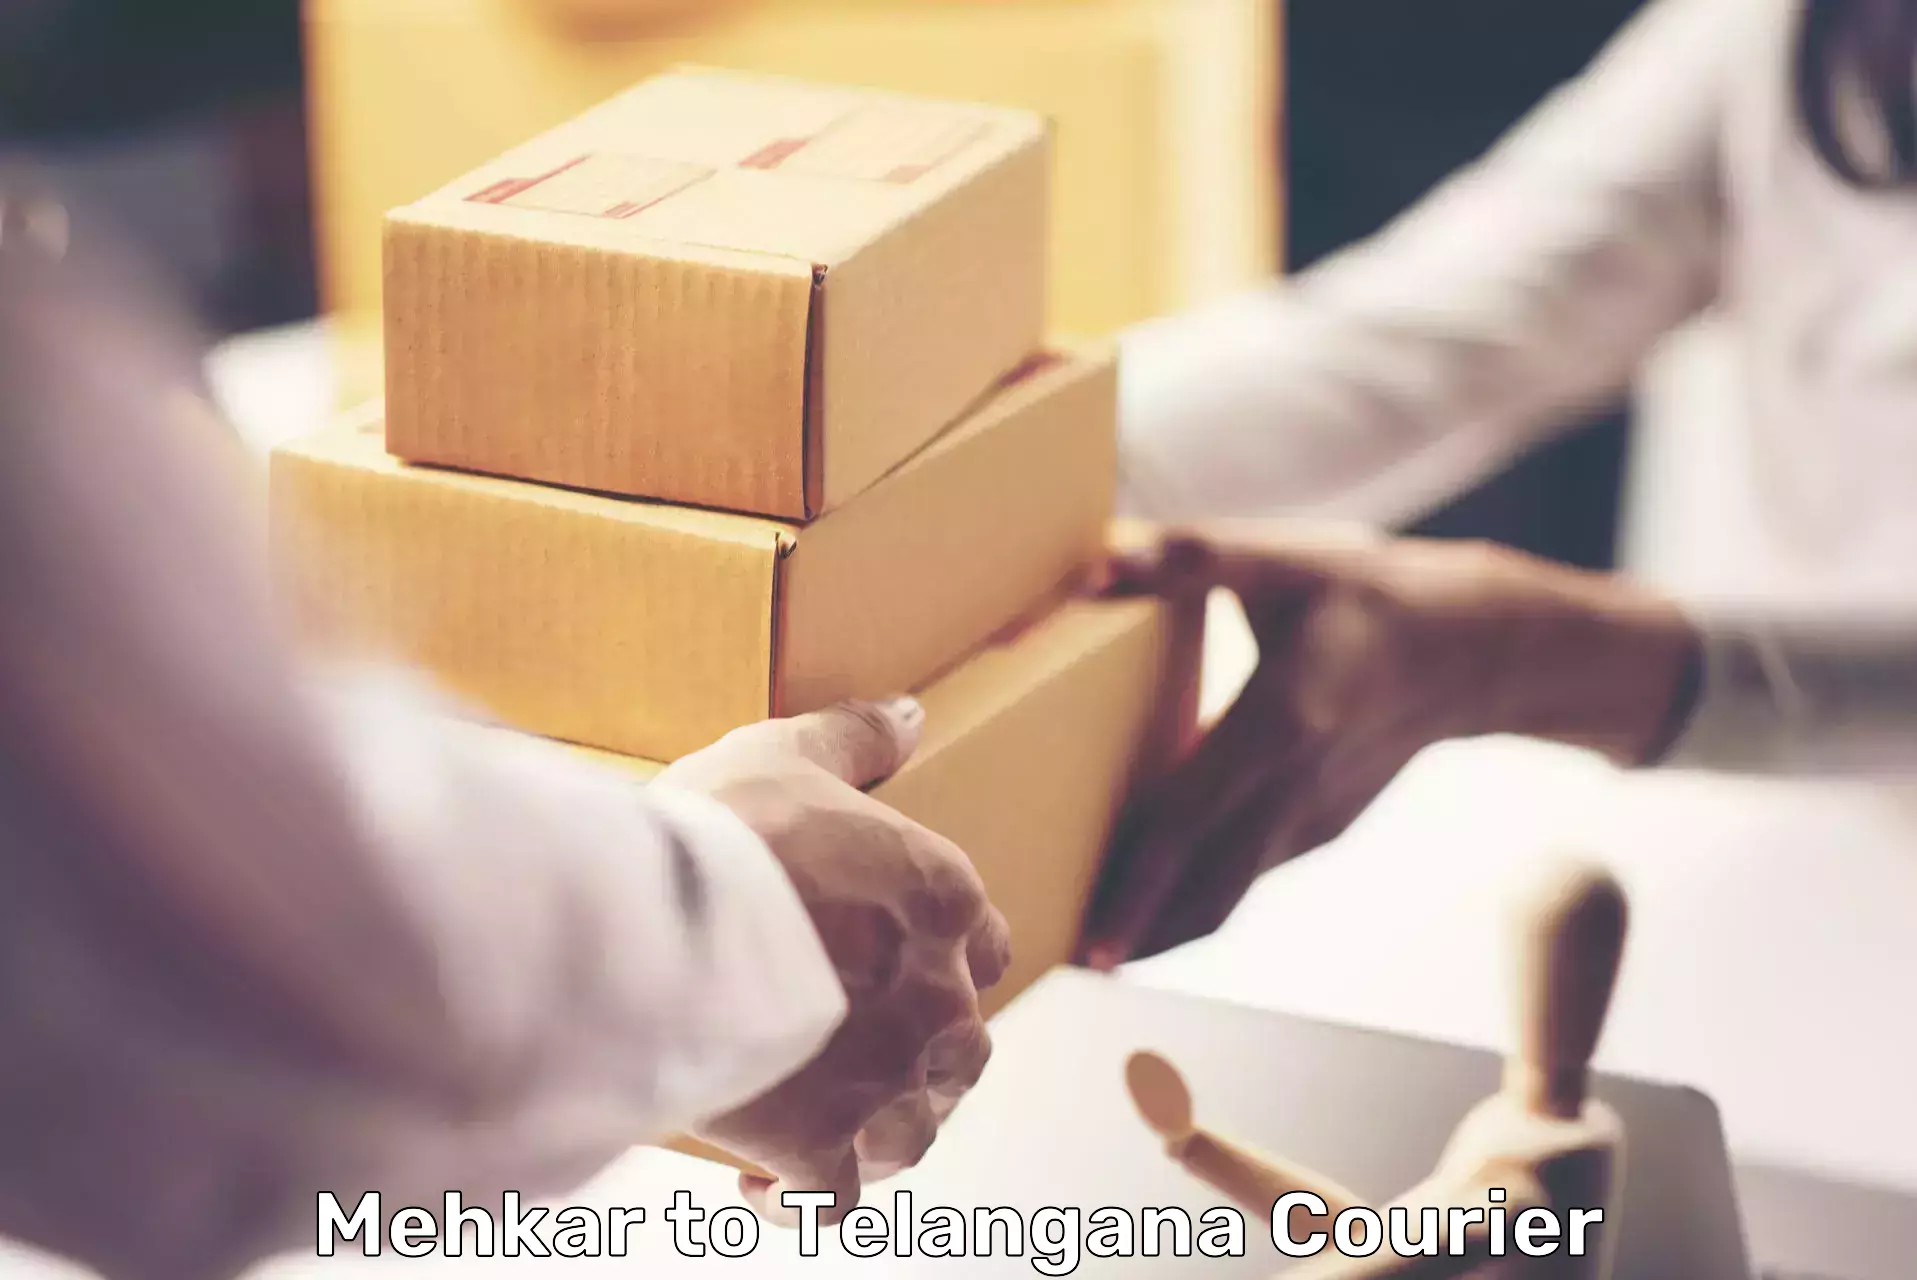 Premium courier services in Mehkar to Jammikunta